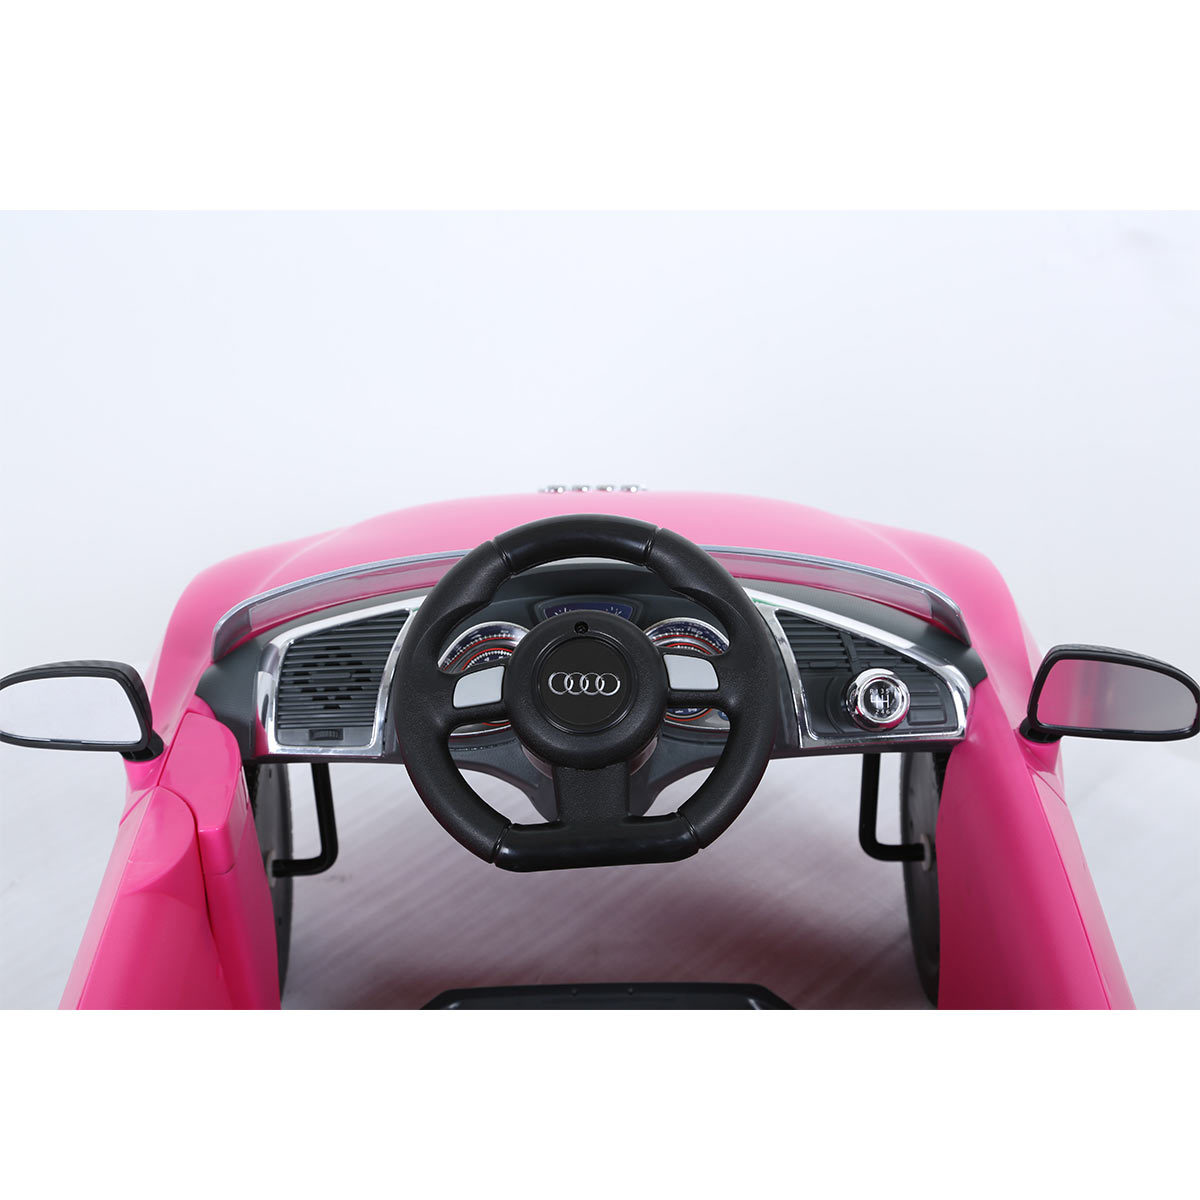 Rollplay Audi R8 Spyder Children's Push Car Ride On - Pink (12+ Months)